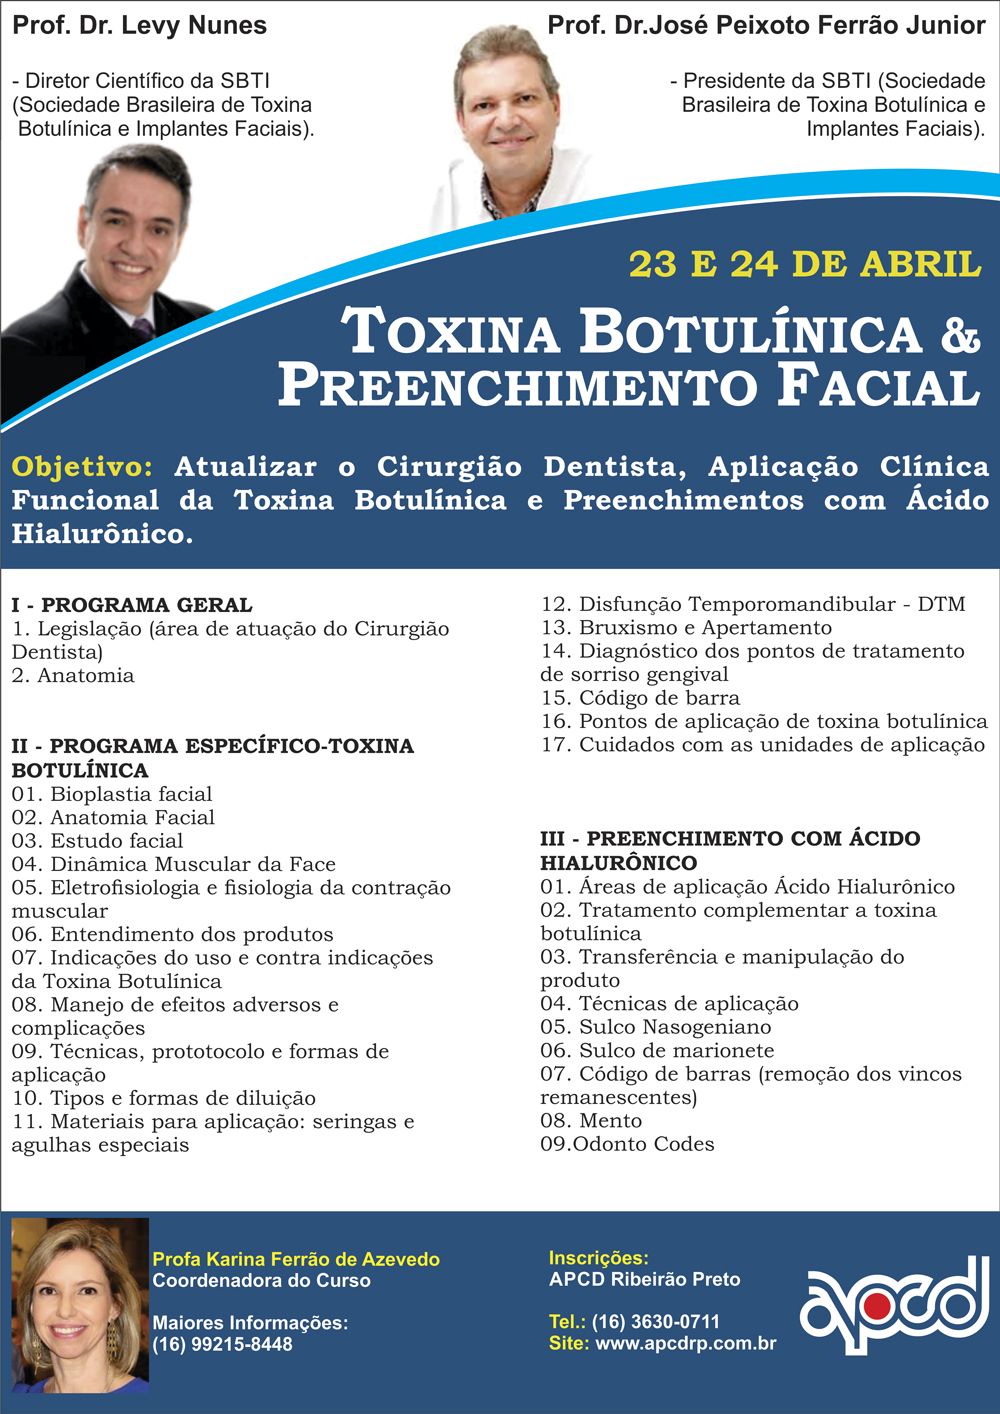 APCD Ribeirão Preto oferece Curso de Toxina Botulínica & Preenchimento Facial